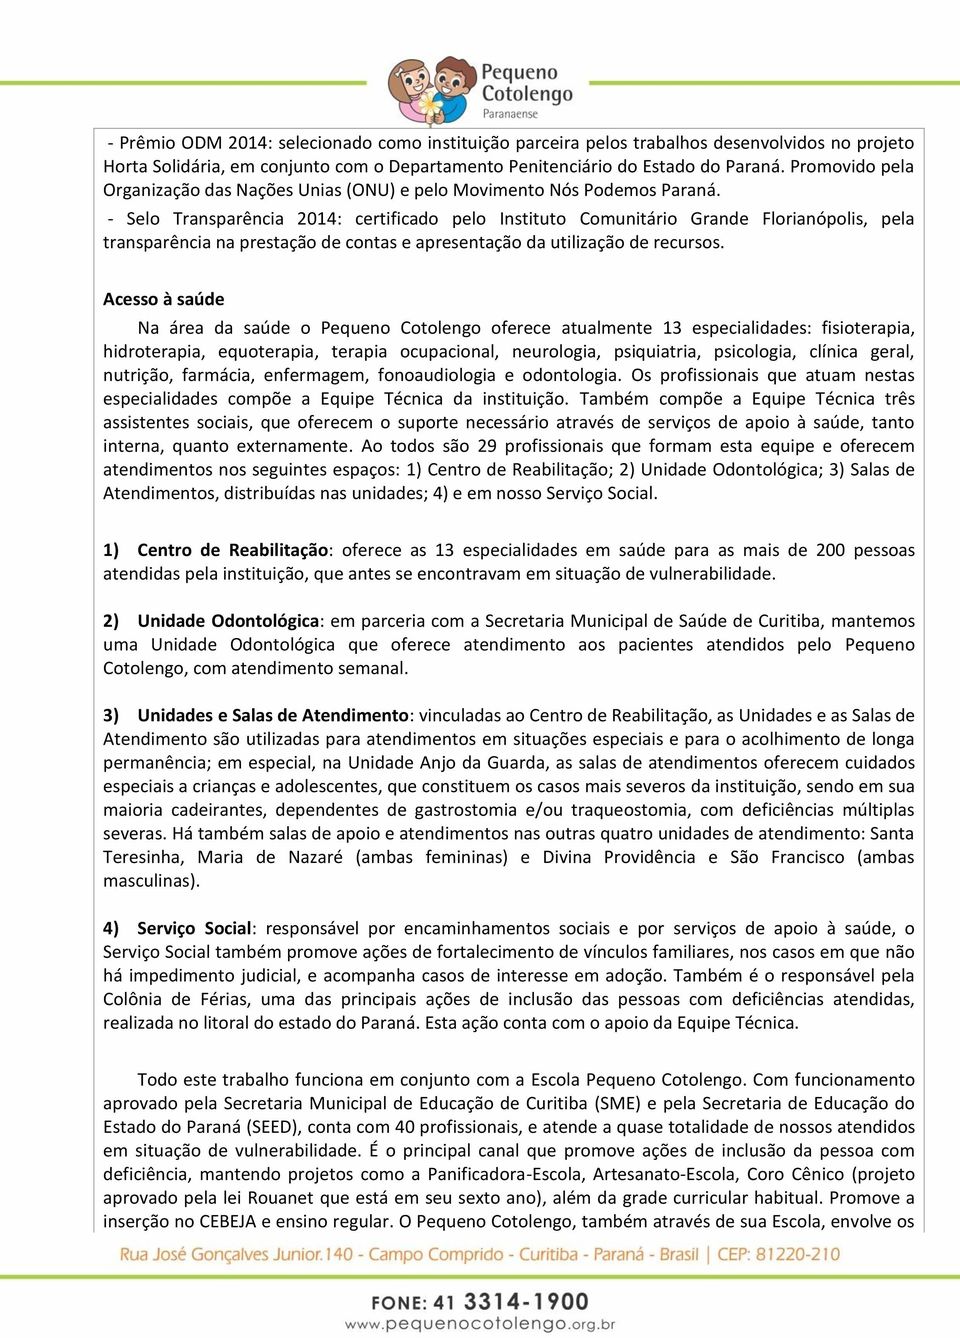 Selo Transparência 2014: certificado pelo Instituto Comunitário Grande Florianópolis, pela transparência na prestação de contas e apresentação da utilização de recursos.